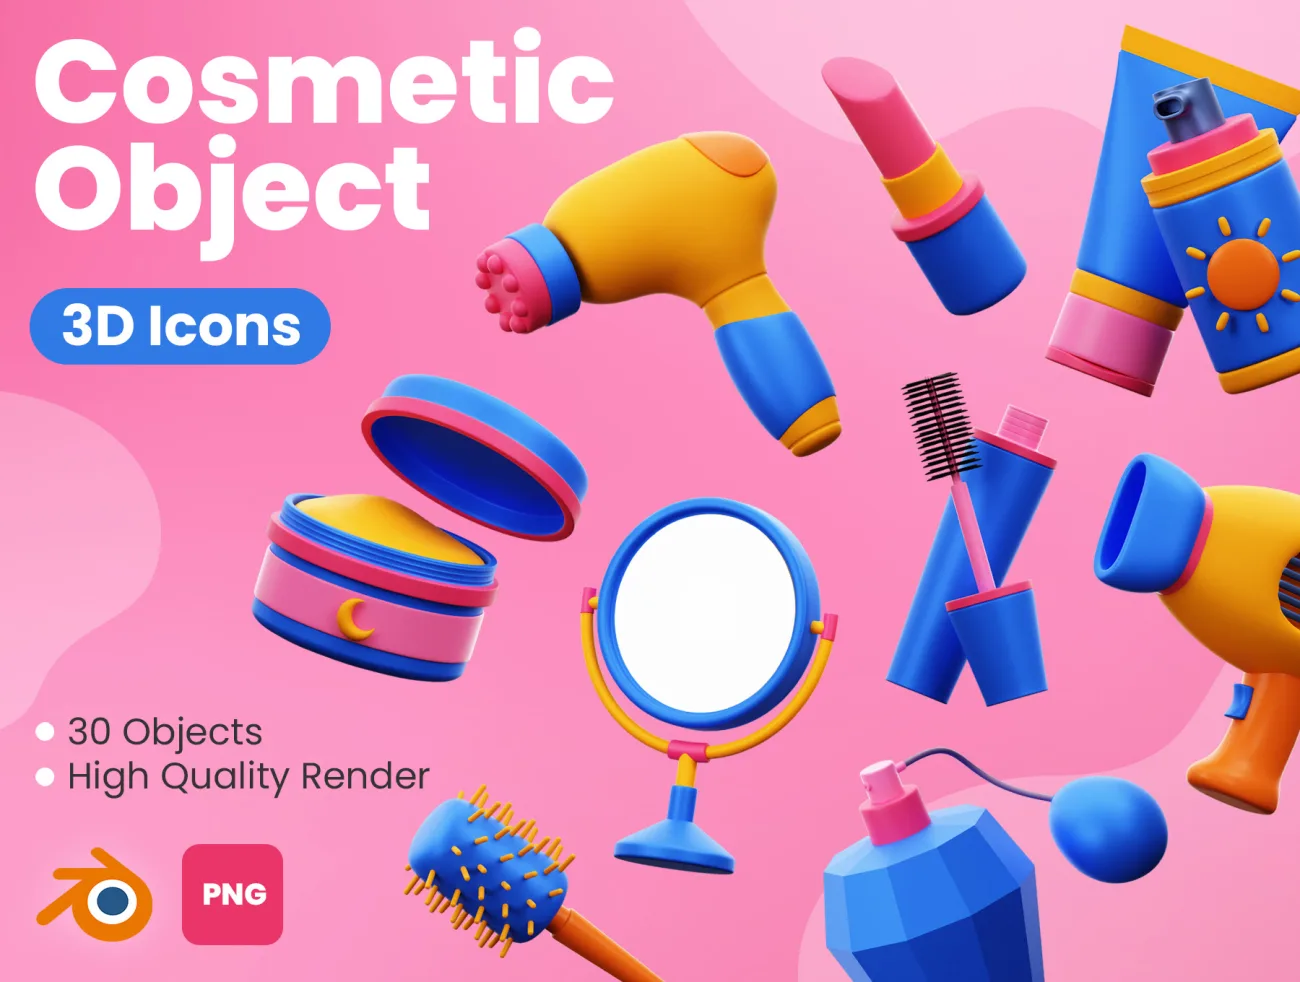 30款美妆化妆品工具3D图标模型素材下载 Cosmetic 3D Icons .blender .png-3D/图标-到位啦UI